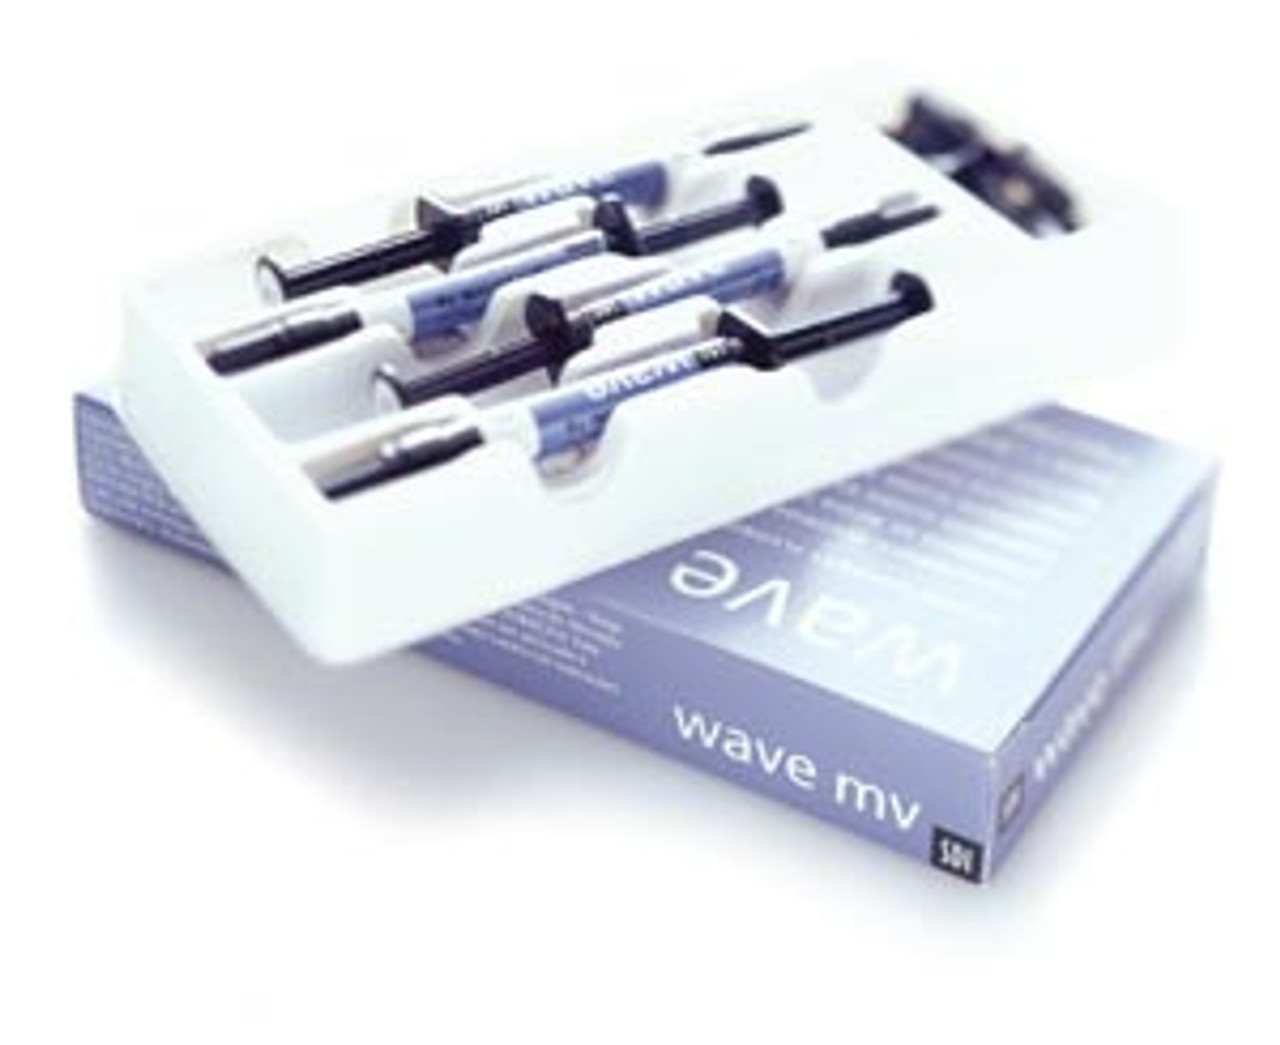 SDI Wave Flowable Composites, Wave MV Syringe Refill - Shade A1 Standard, 1 x 1g Syringe, 5 Applicator Tips 8310102